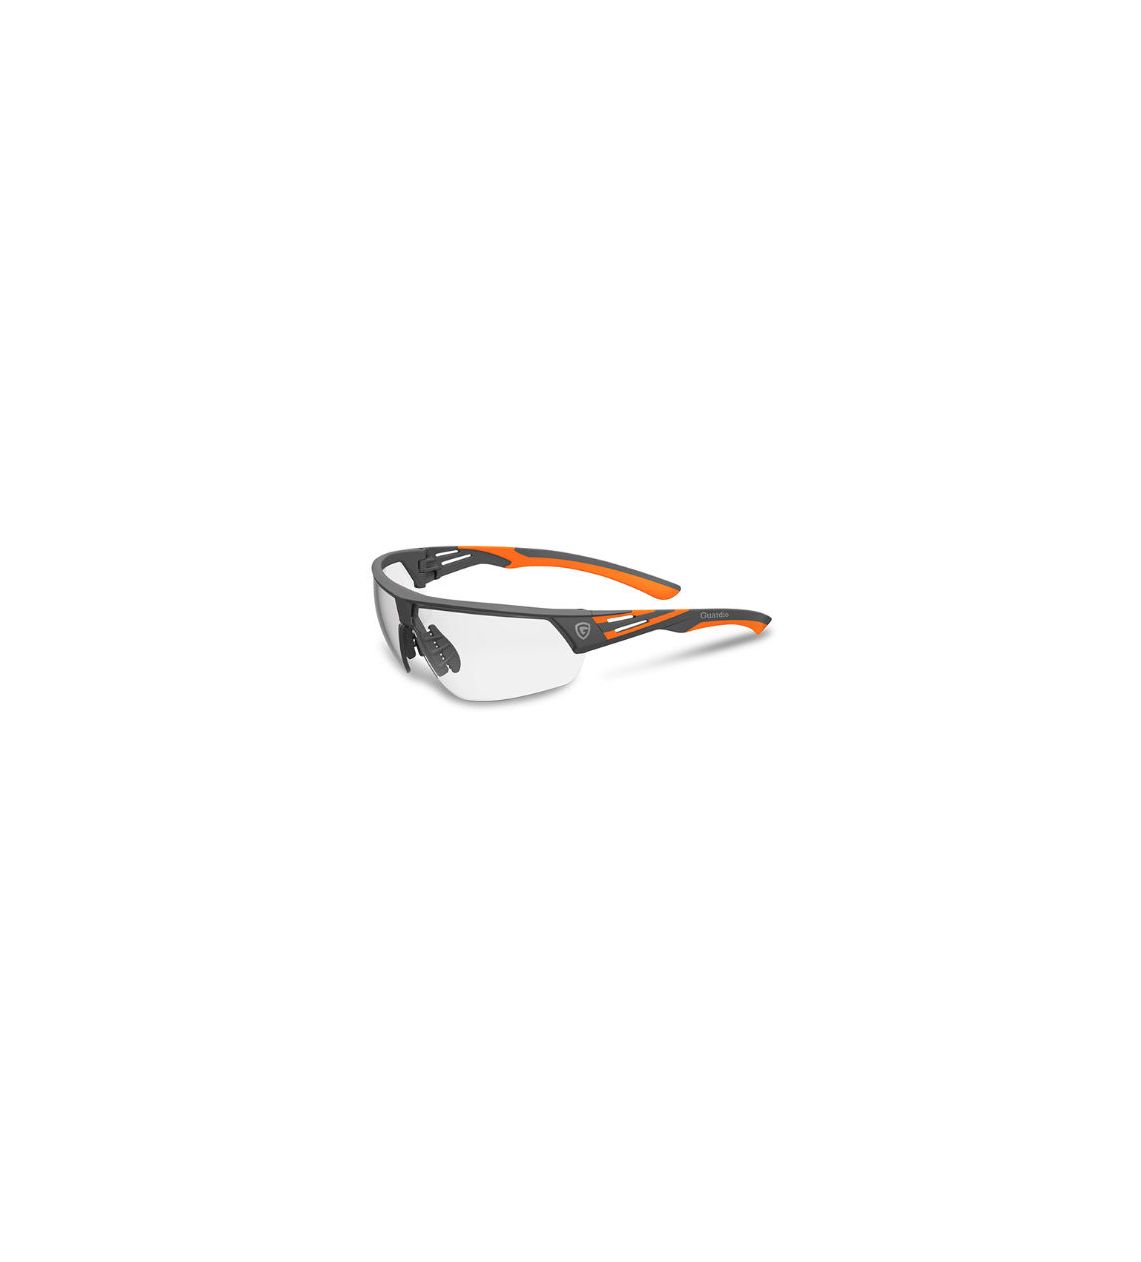 Schutzbrille Arti 300 PH. Photochrom UV. Verdunkelnde Gläser. Optische Güteklasse 1.